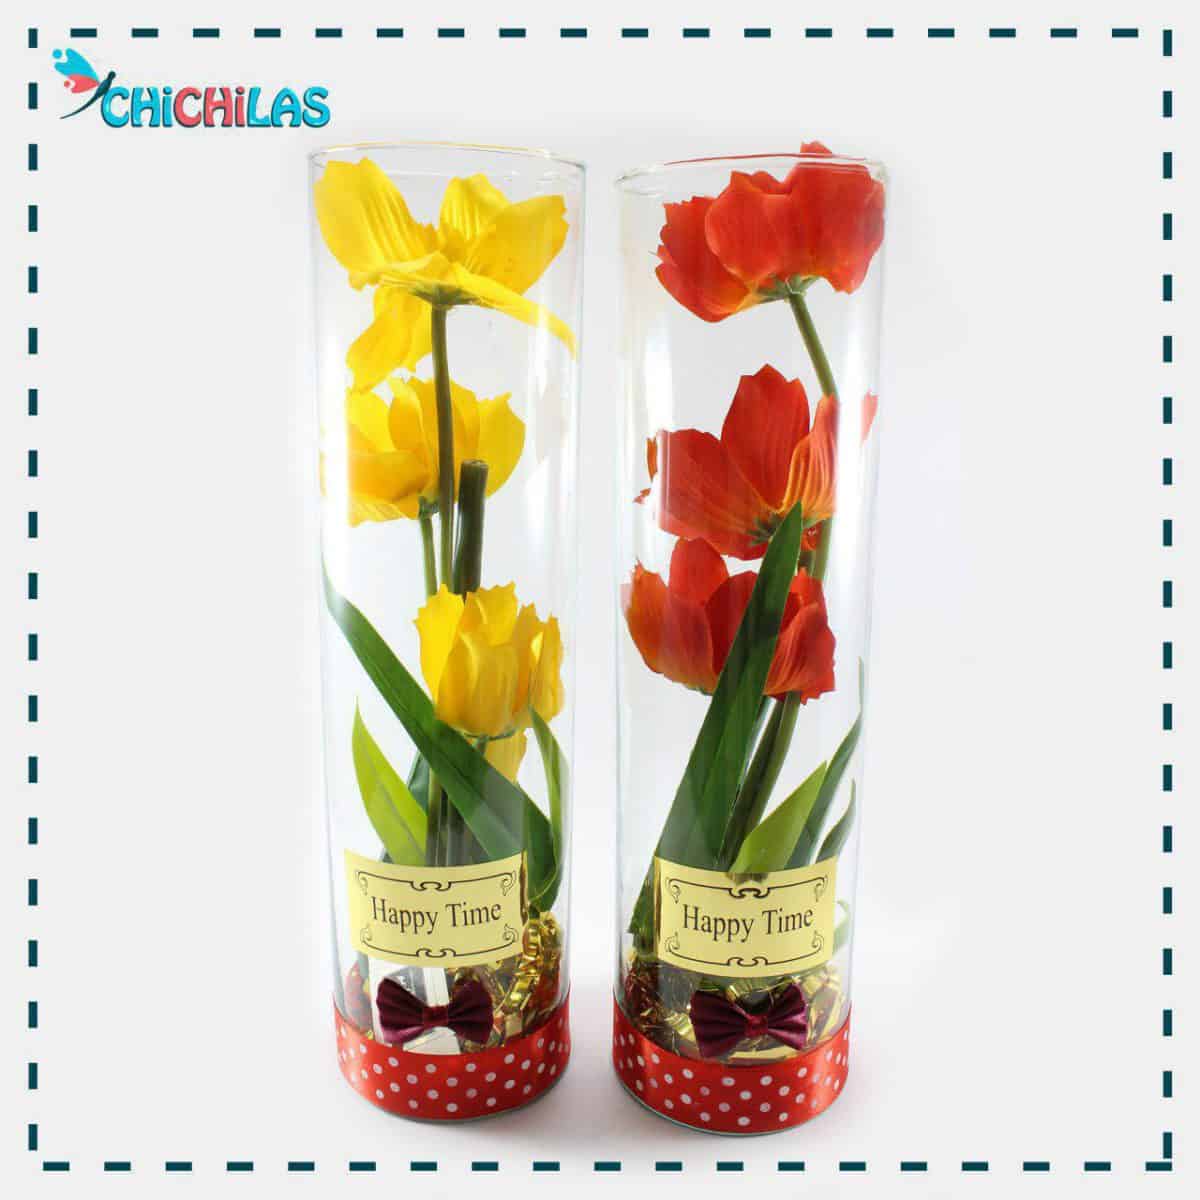 چیچیلاس - گلدان شیشه ای - گلدان دکوری - چیچیلاس - فروشگاه دکوری - گلدان رومیزی - کادویی - هدیه - ولنتاین